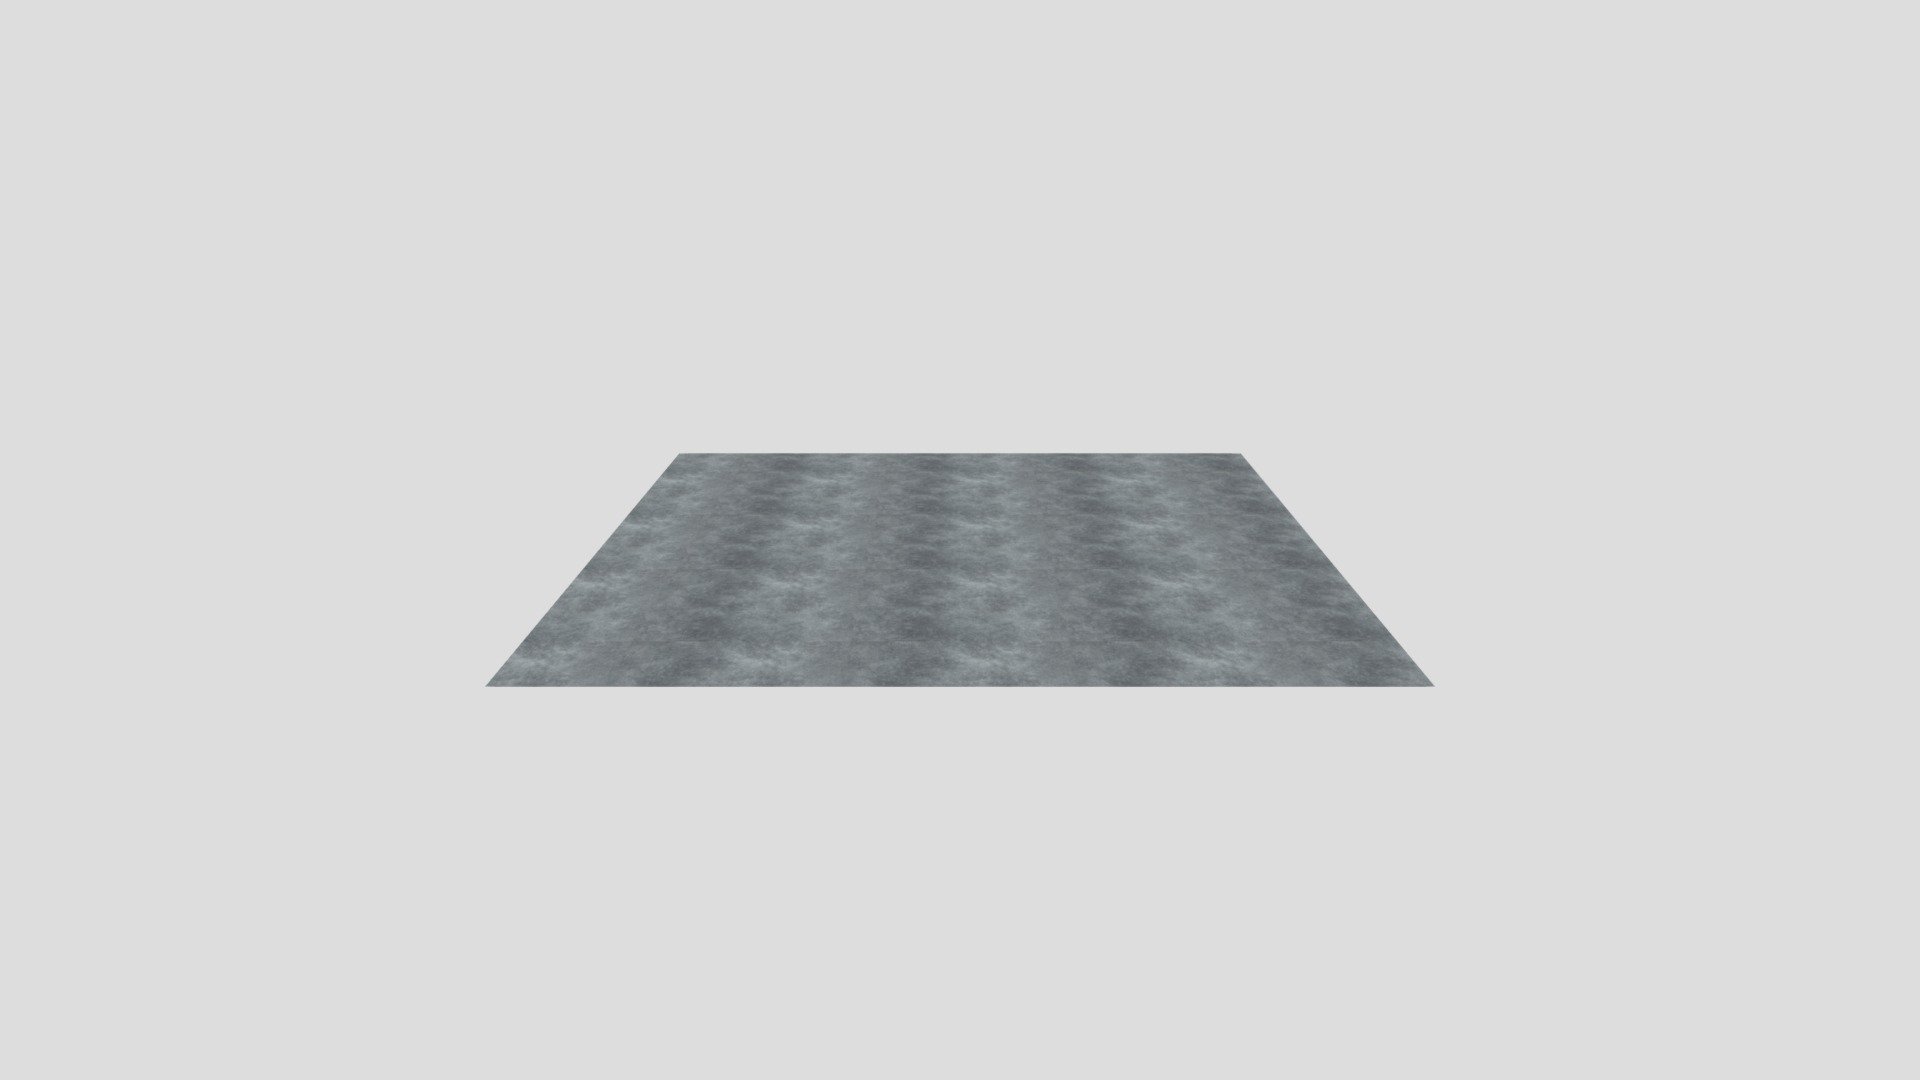 floor5 - 3D model by leason1 [02a885f] - Sketchfab